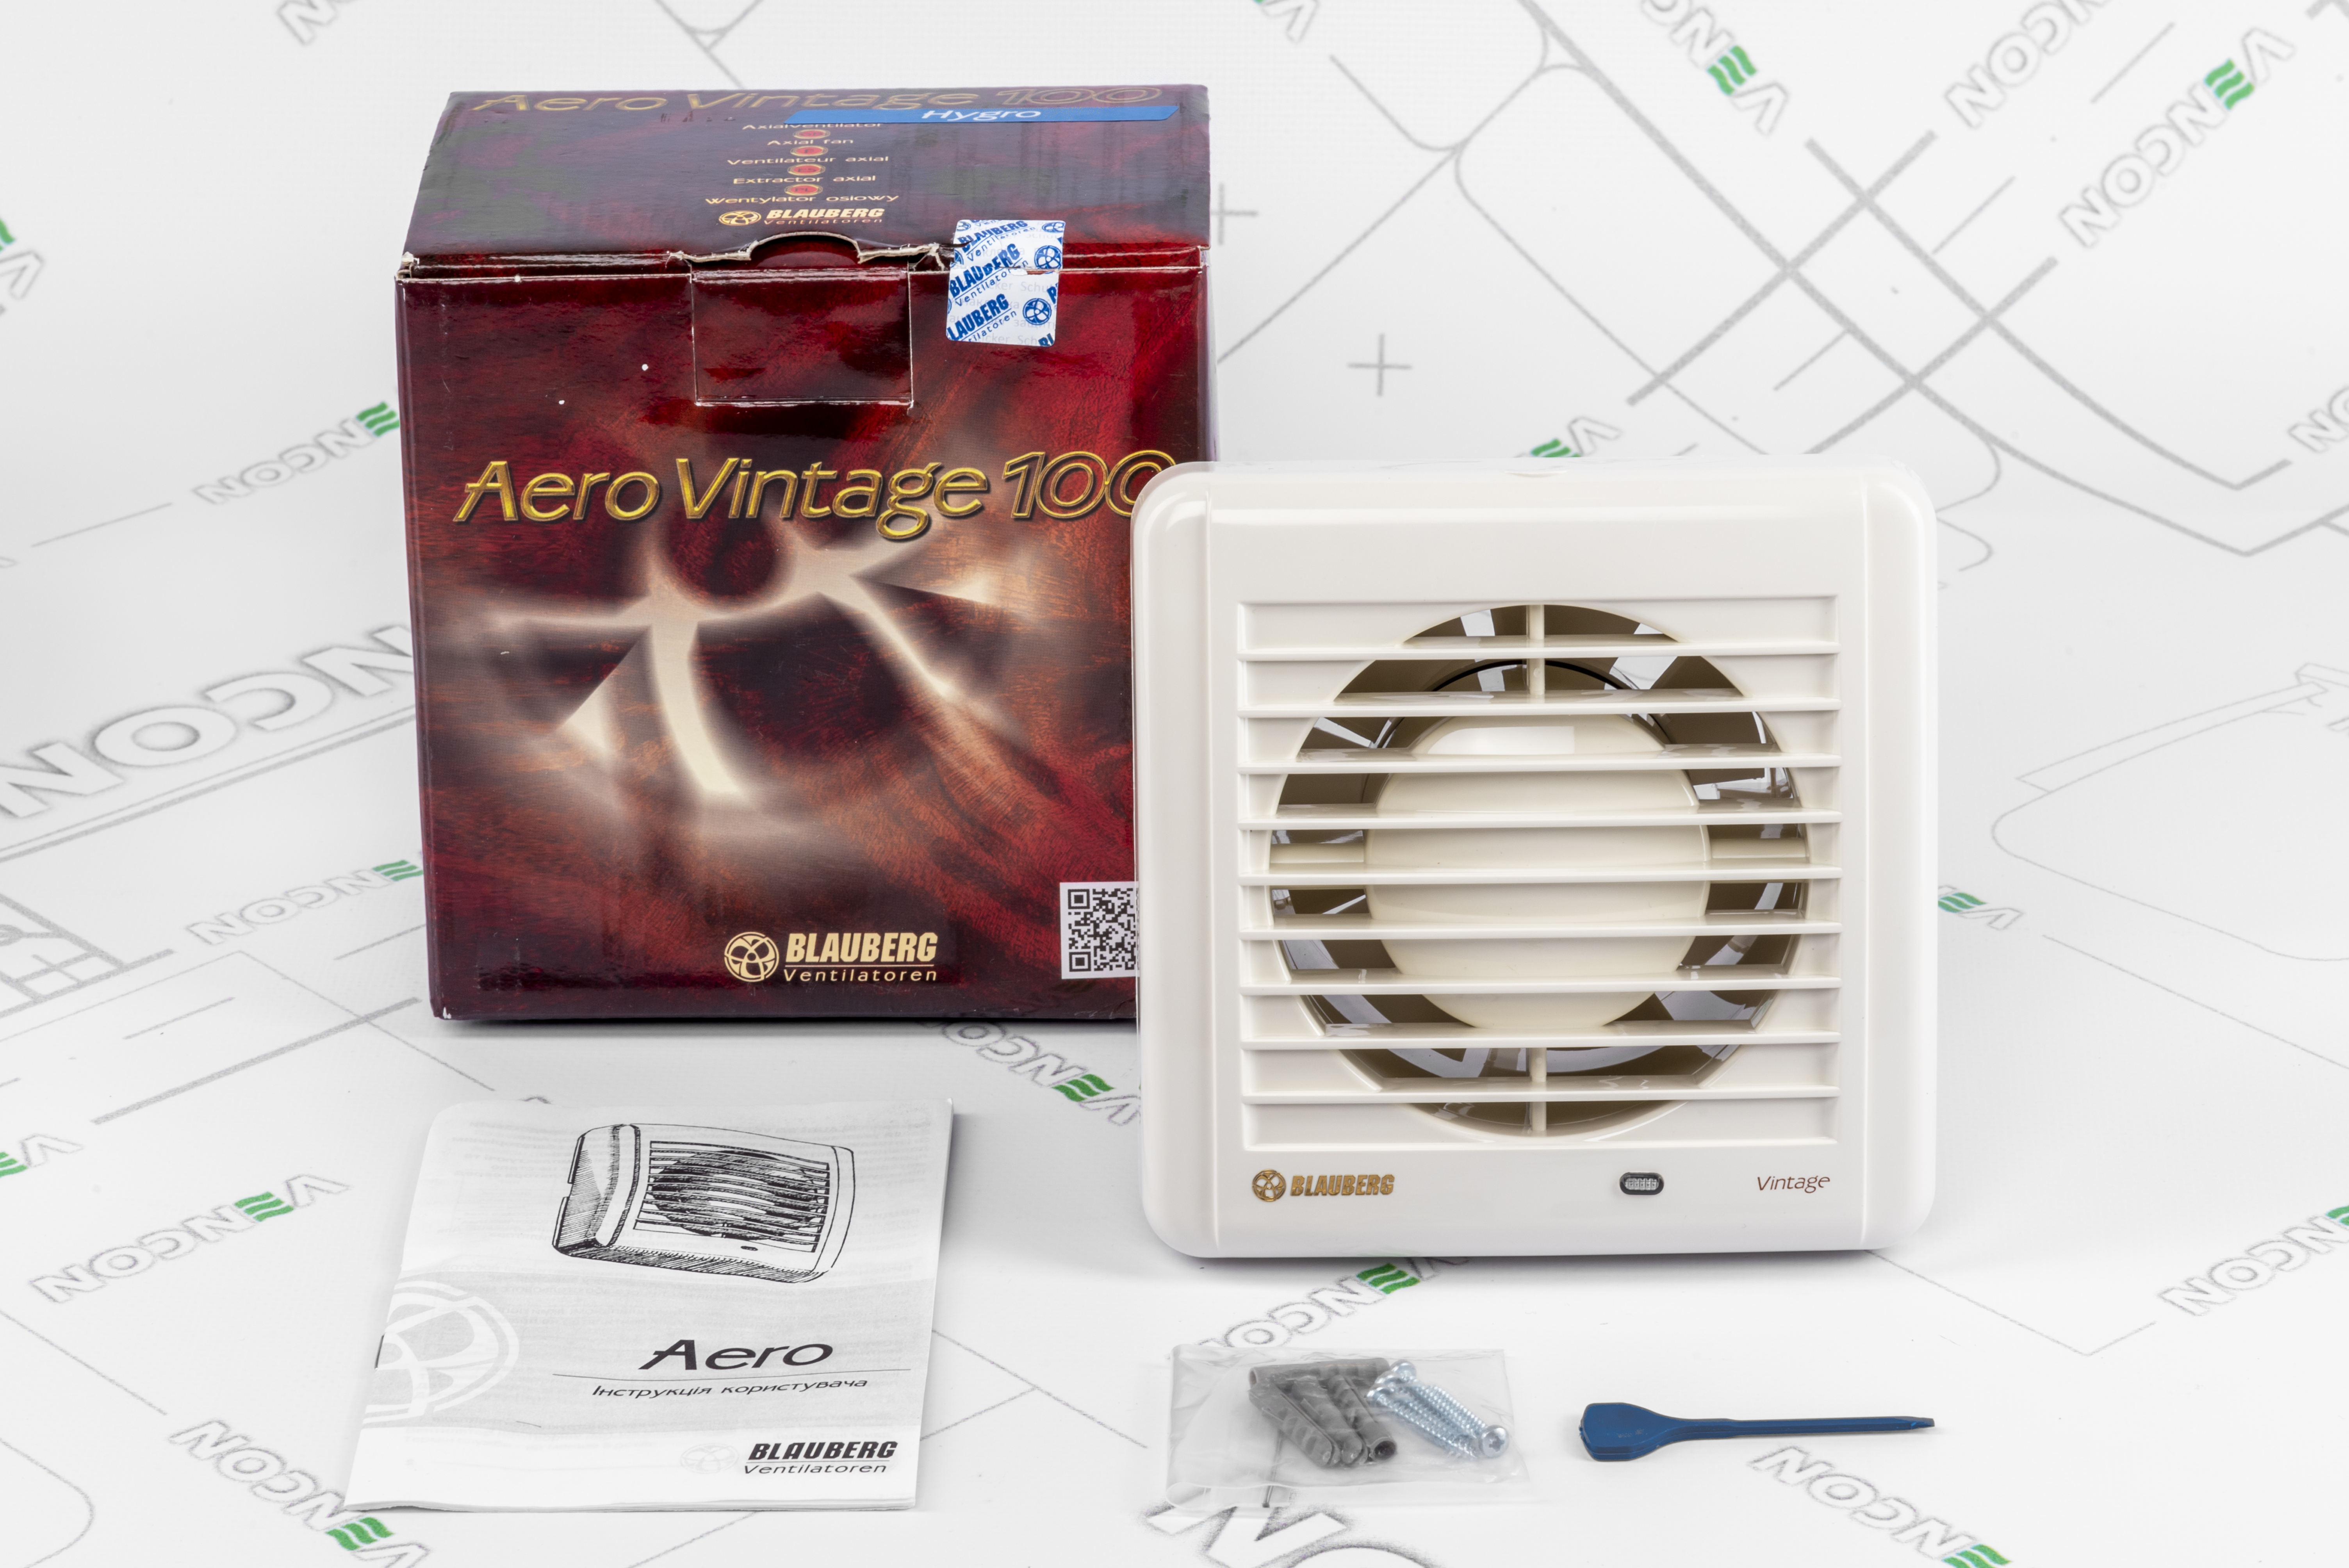 Витяжний вентилятор Blauberg Aero Vintage 100 H характеристики - фотографія 7